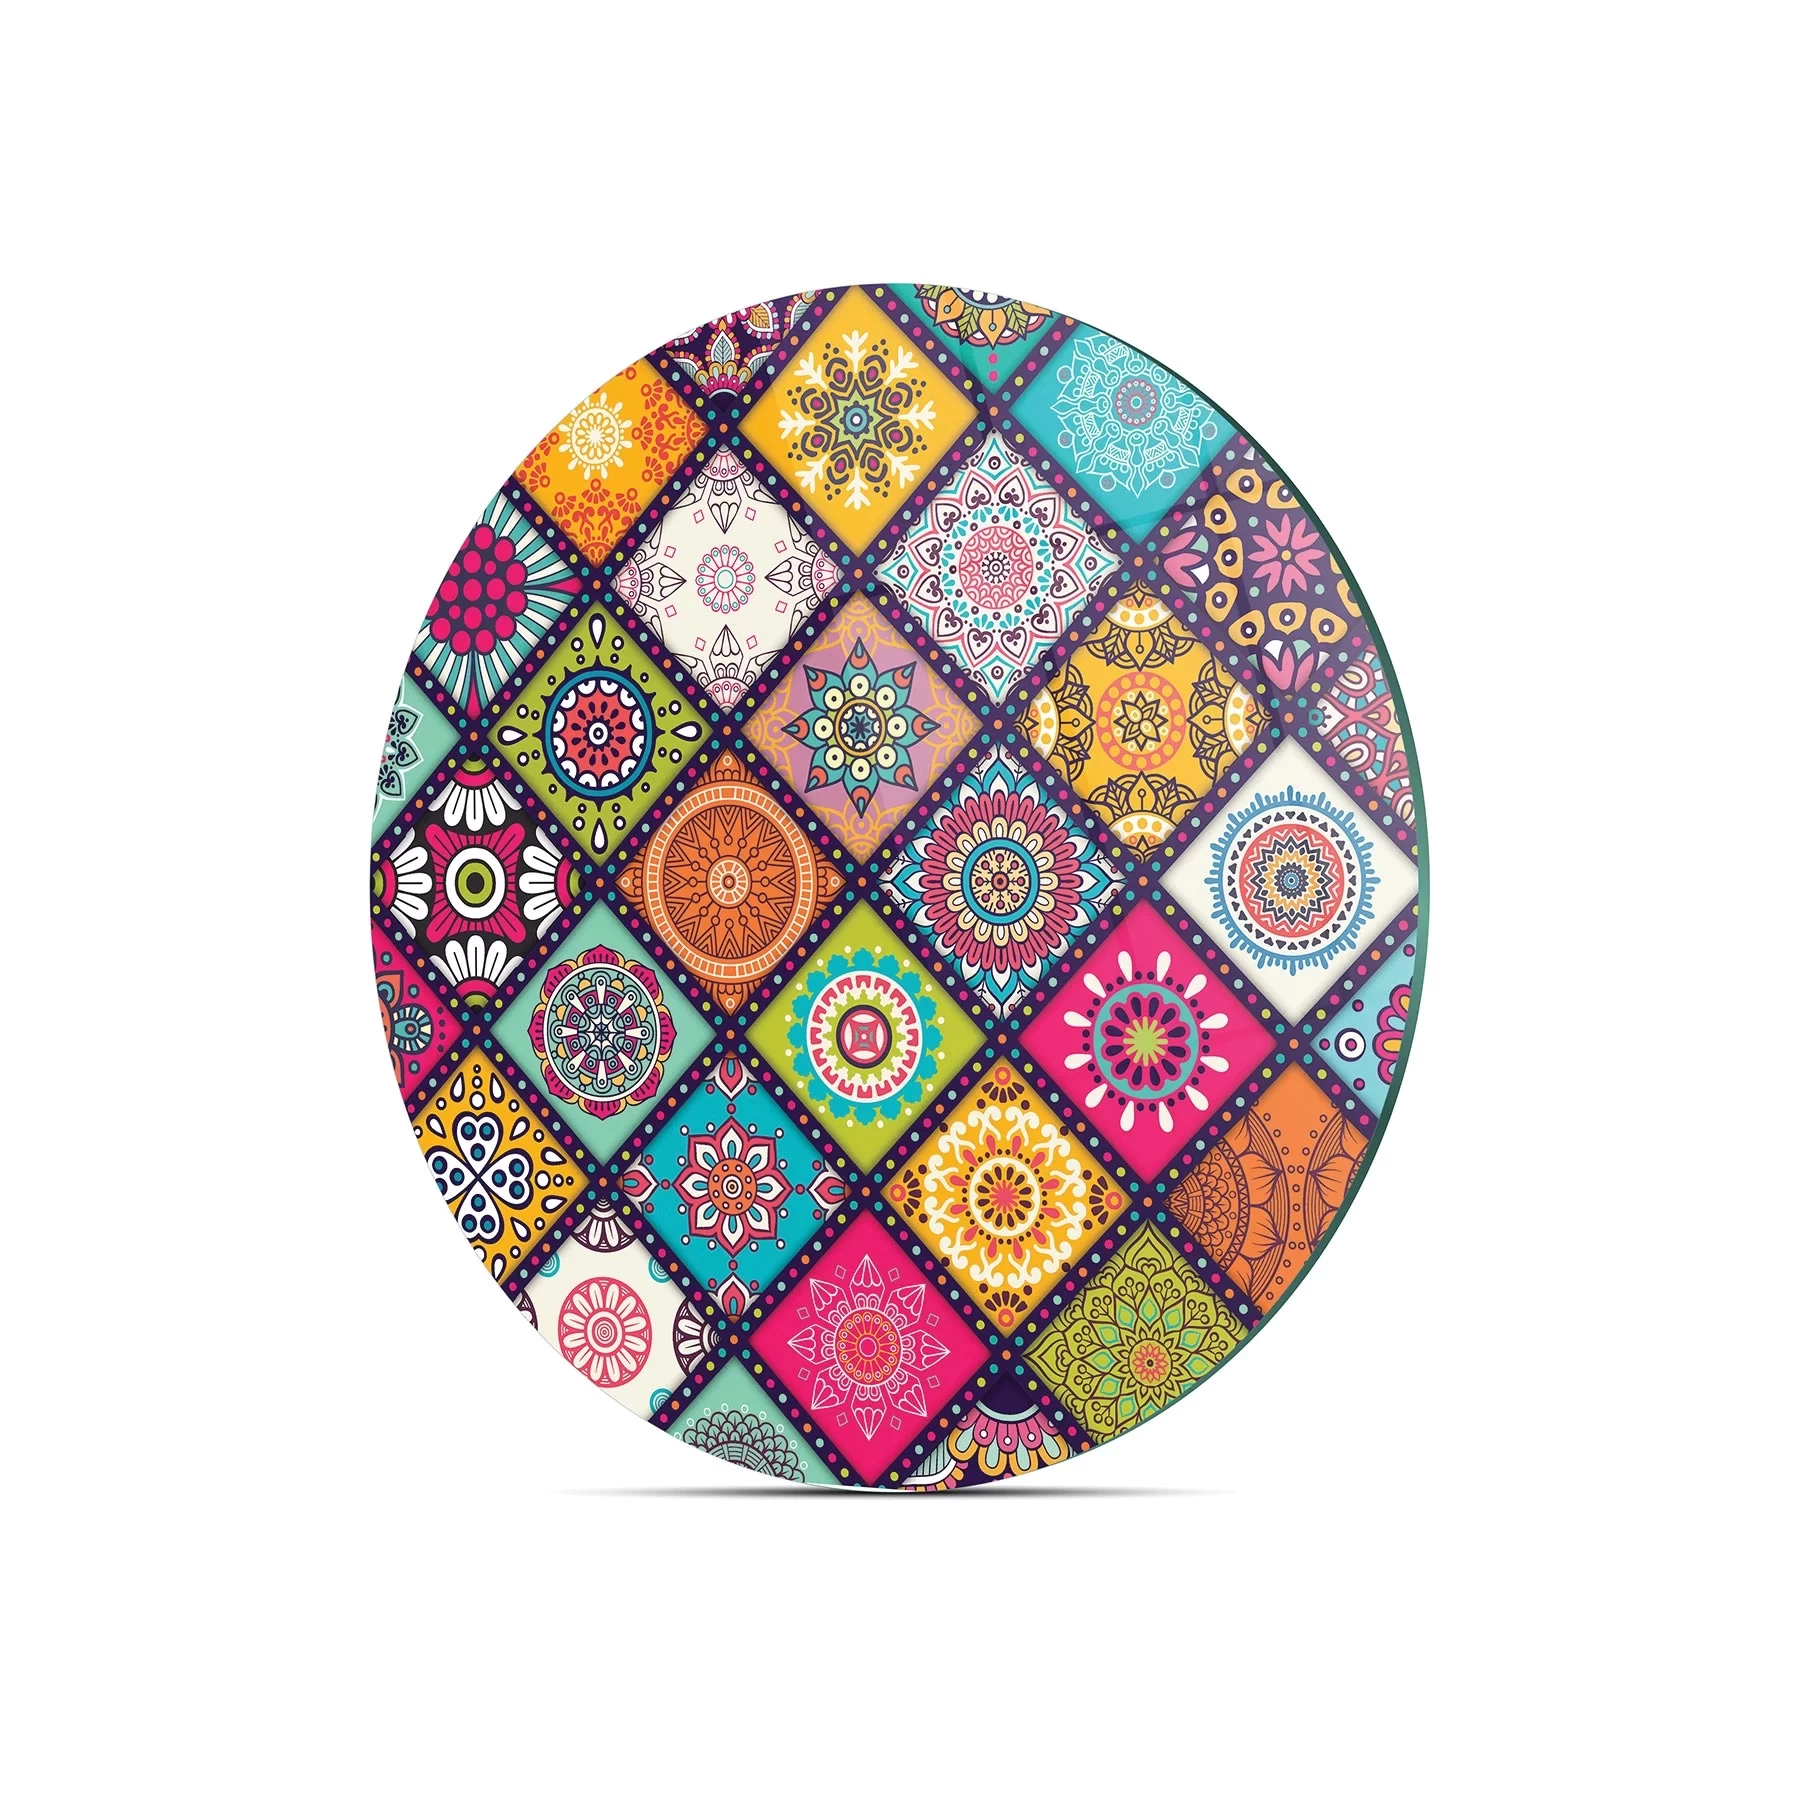 Decovetro Cam Kesme Tahtası Yuvarlak Renki Mandala Desenli 30x30 Cm